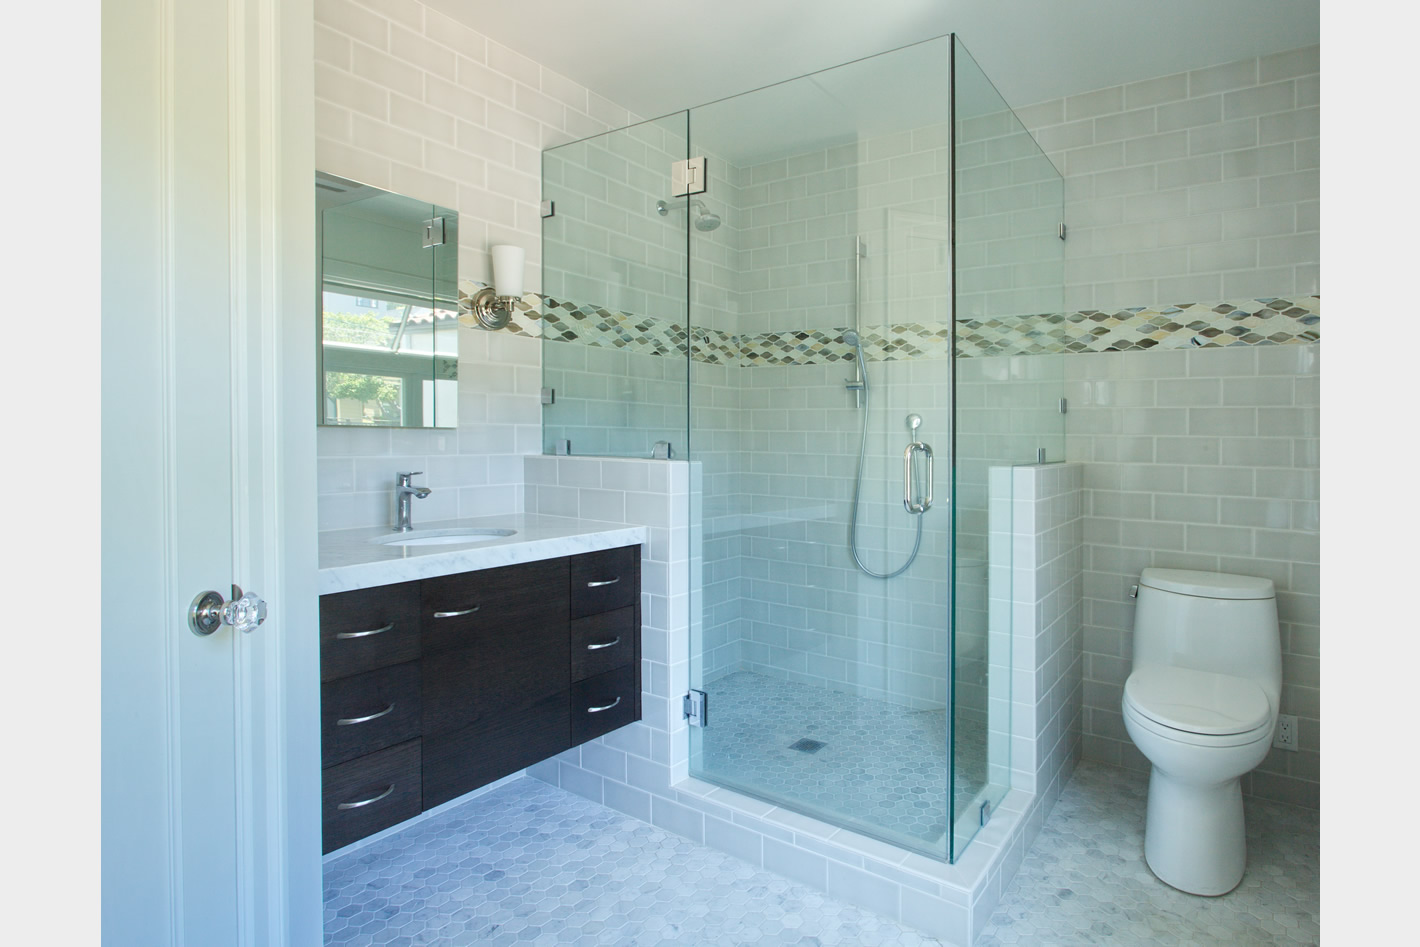 Berkeley Hills Renovation - Bathroom Remodel